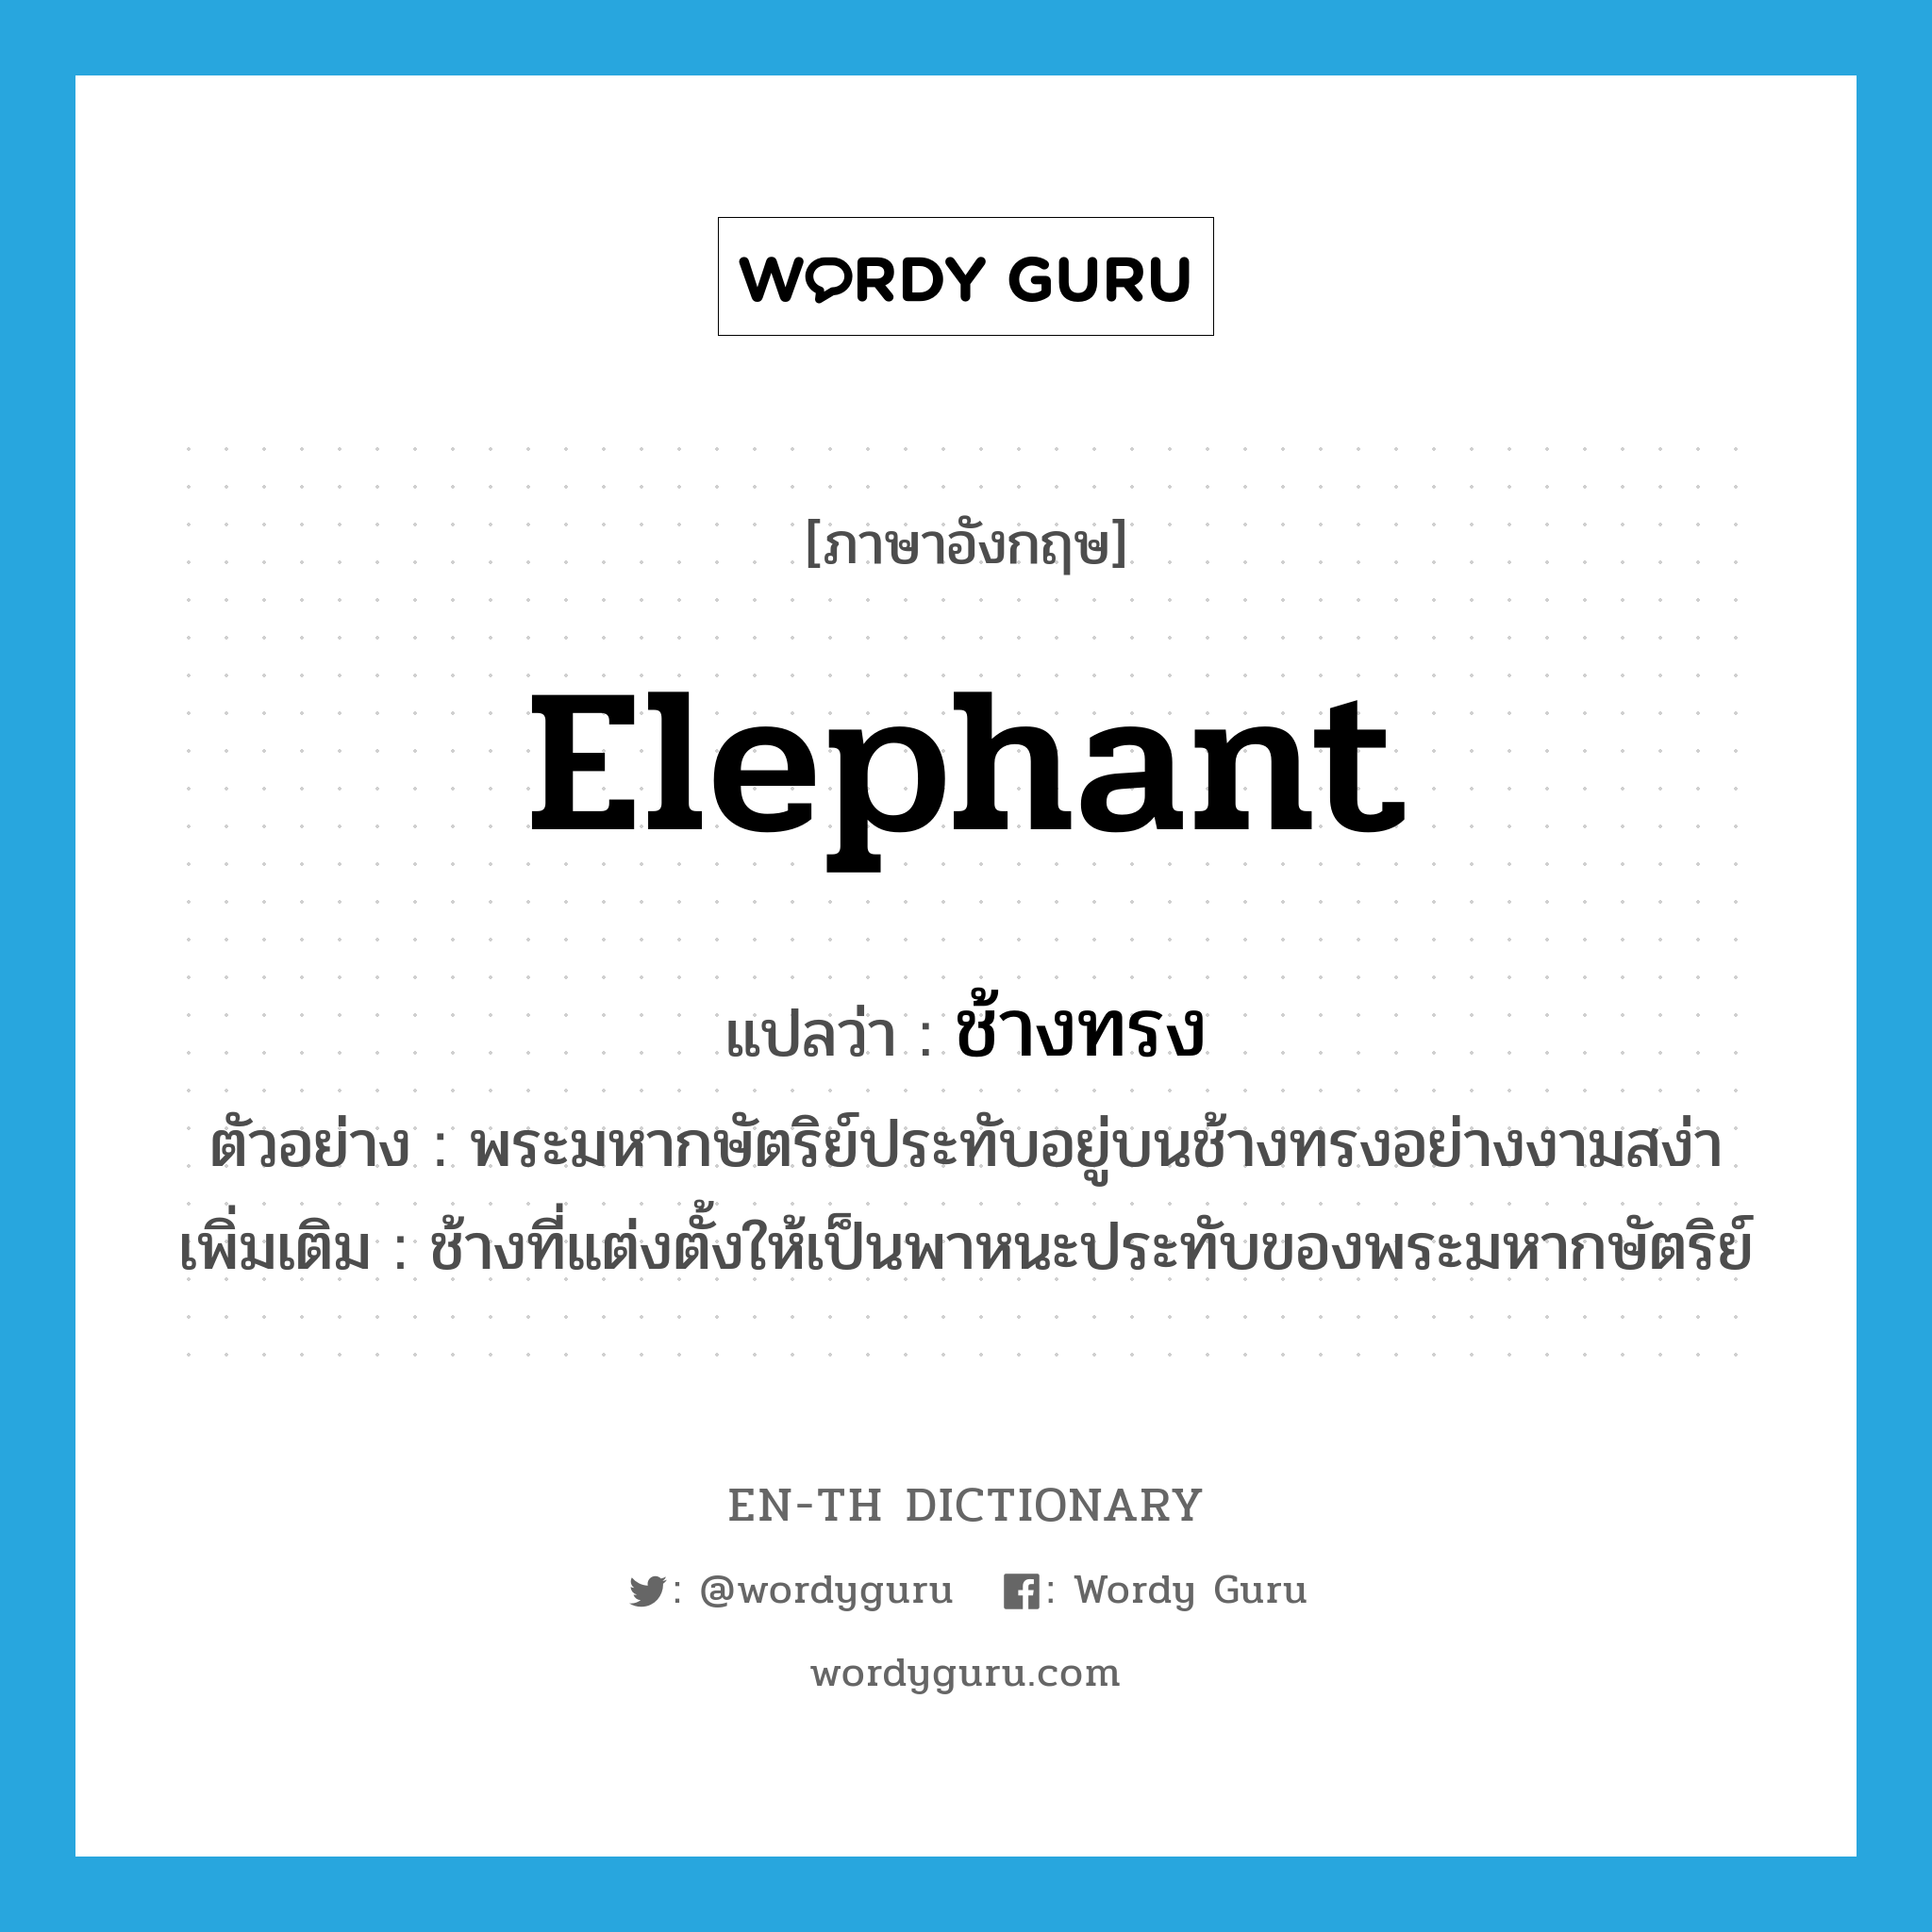 elephant แปลว่า?, คำศัพท์ภาษาอังกฤษ elephant แปลว่า ช้างทรง ประเภท N ตัวอย่าง พระมหากษัตริย์ประทับอยู่บนช้างทรงอย่างงามสง่า เพิ่มเติม ช้างที่แต่งตั้งให้เป็นพาหนะประทับของพระมหากษัตริย์ หมวด N